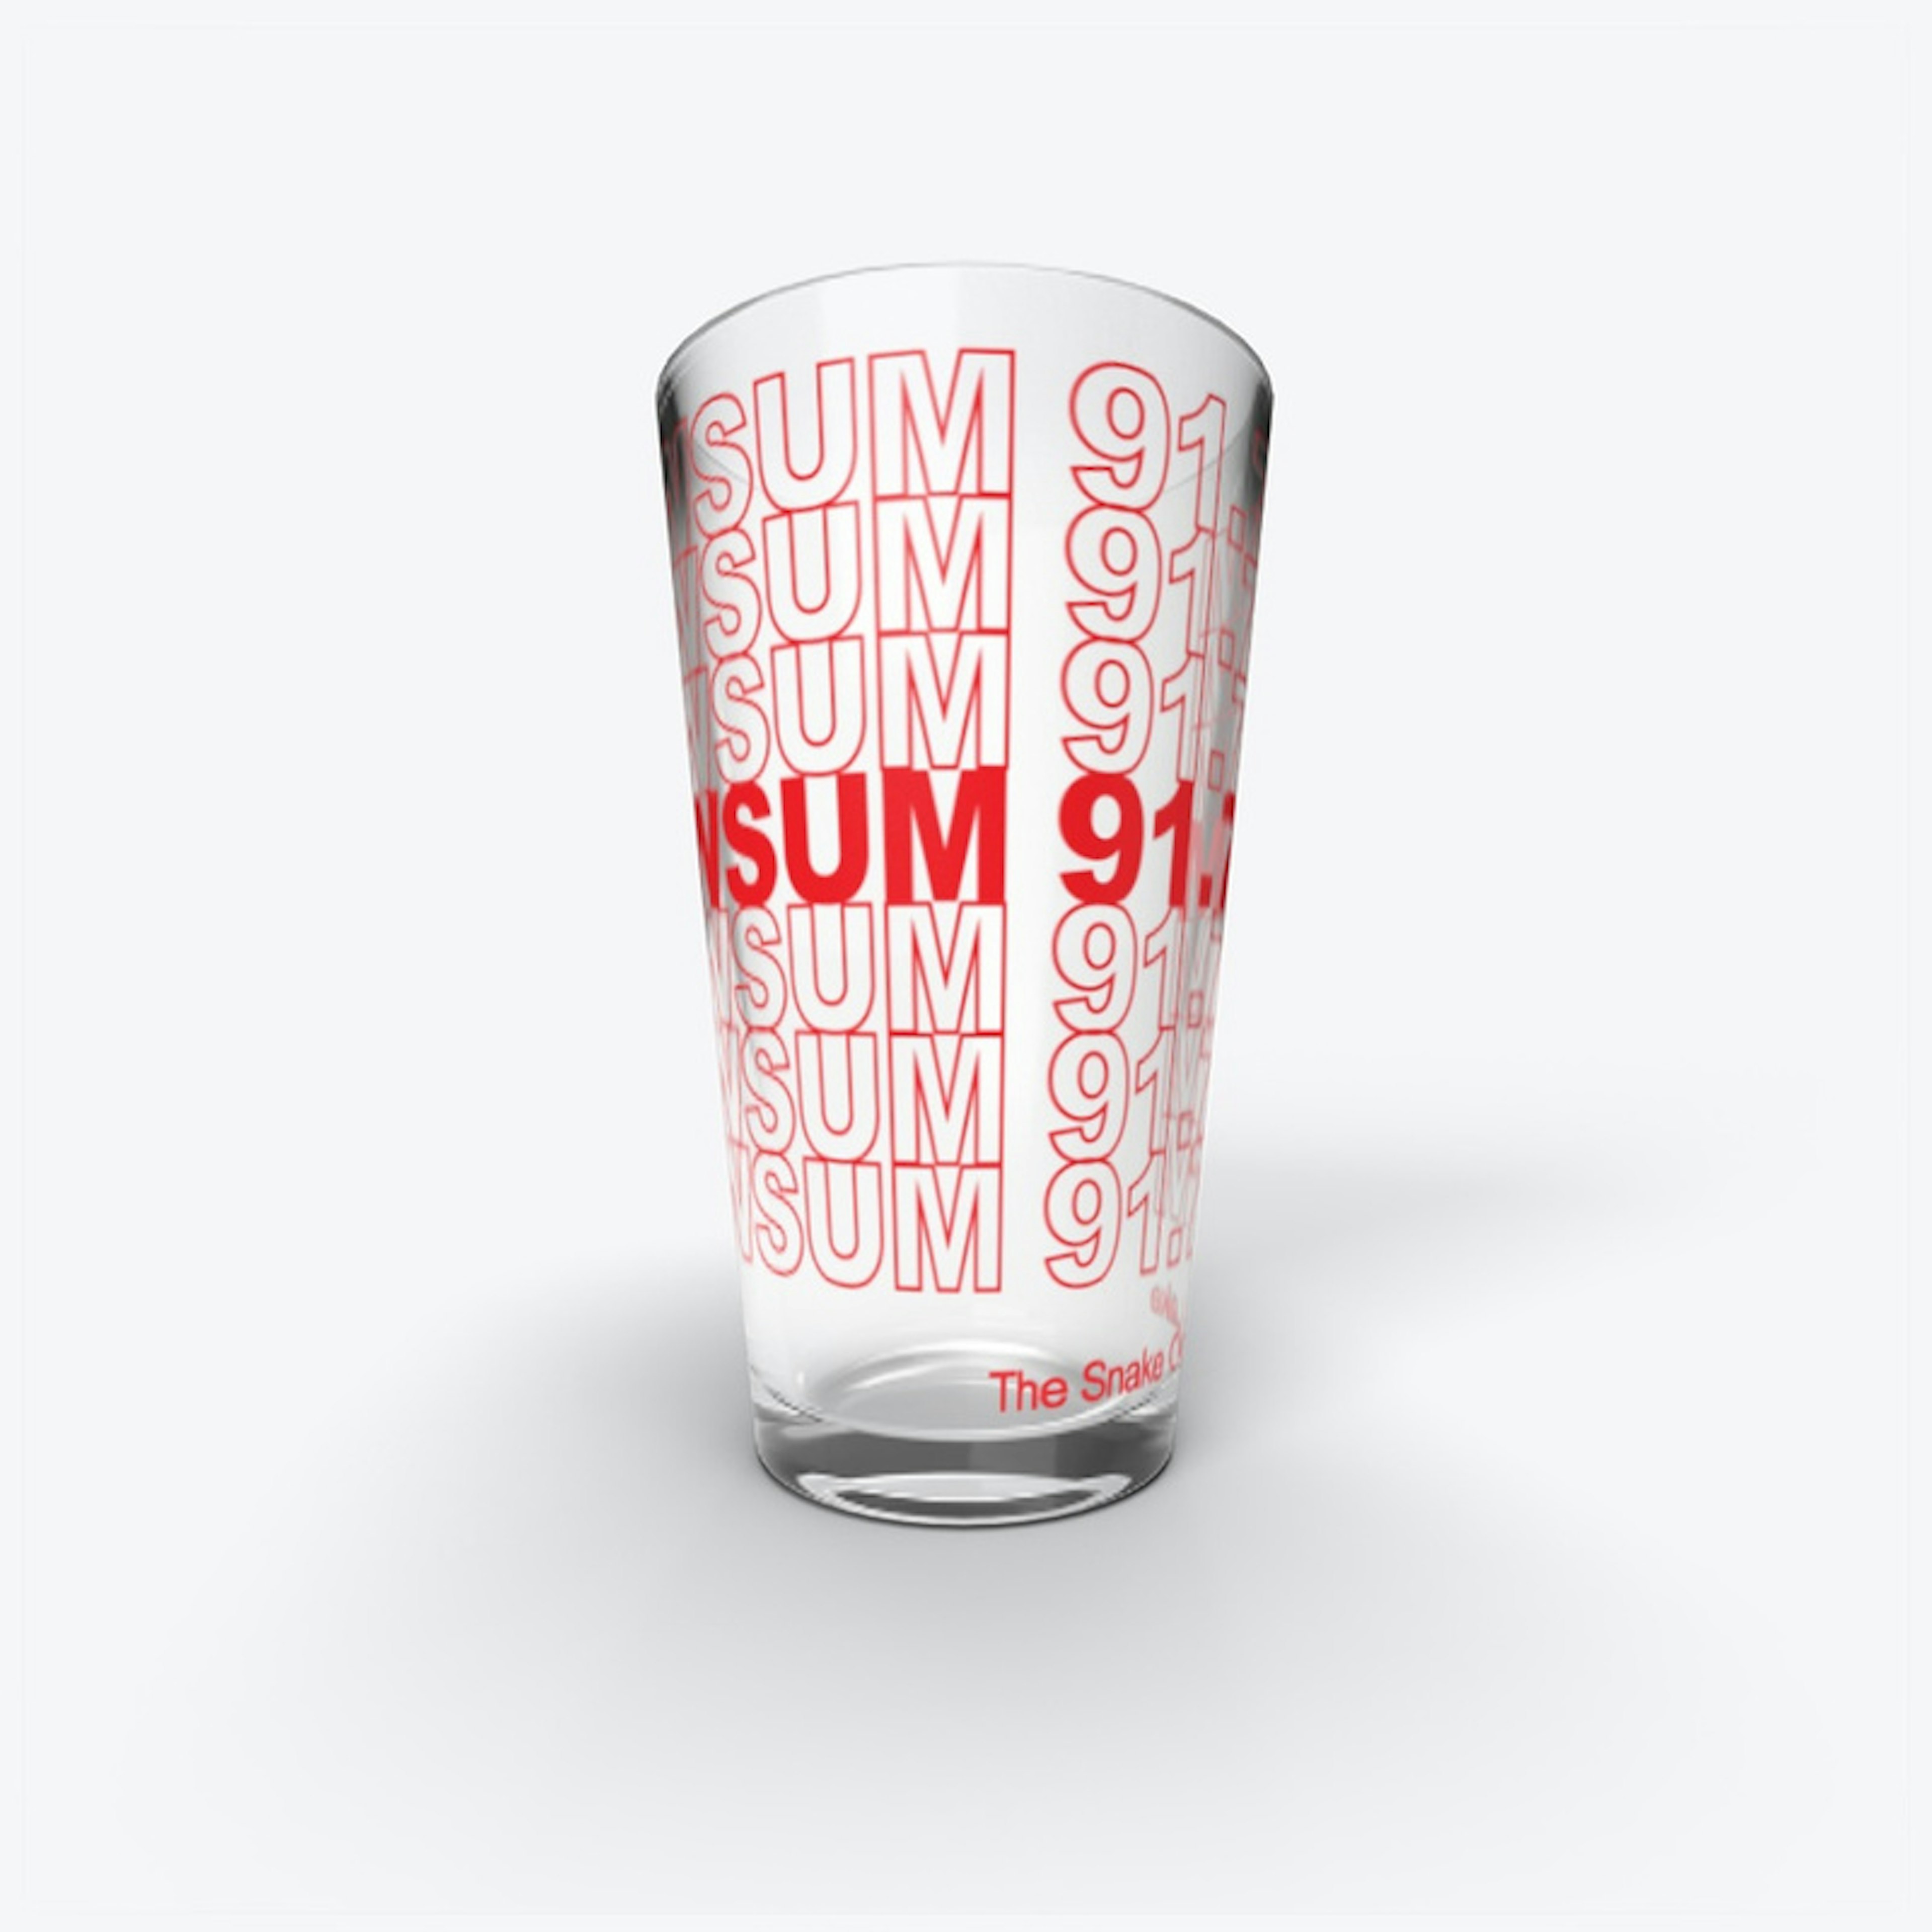 WSUM 91.7 FM Pint Glass